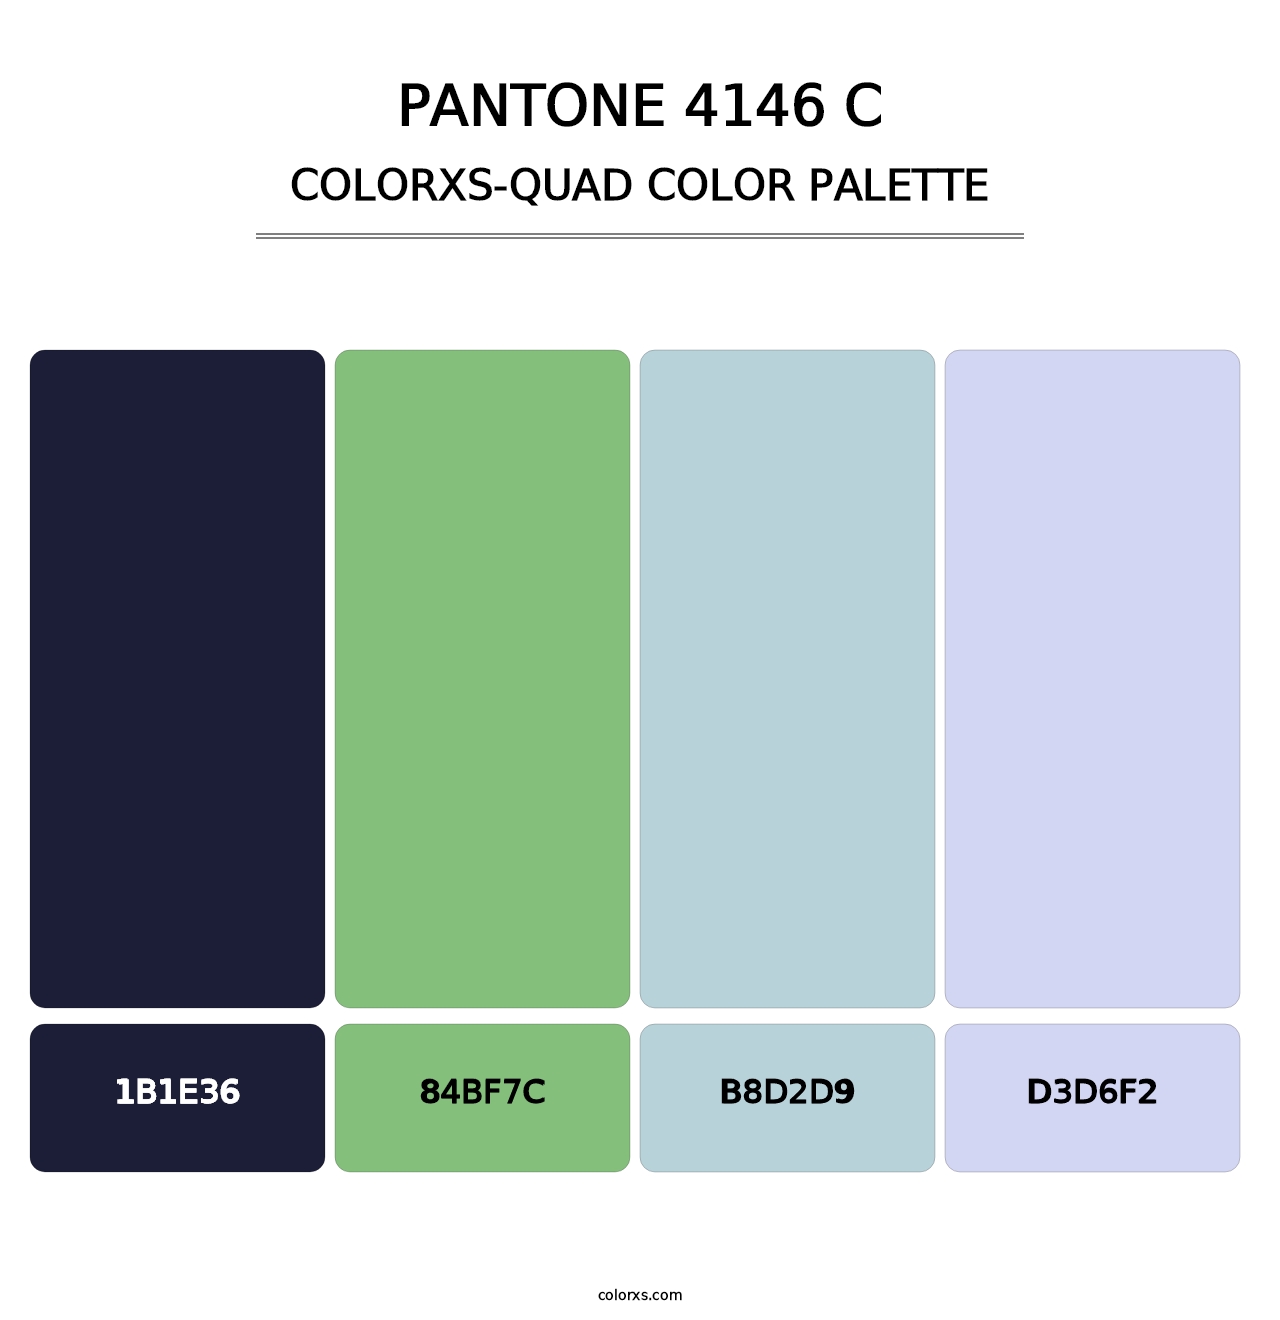 PANTONE 4146 C - Colorxs Quad Palette